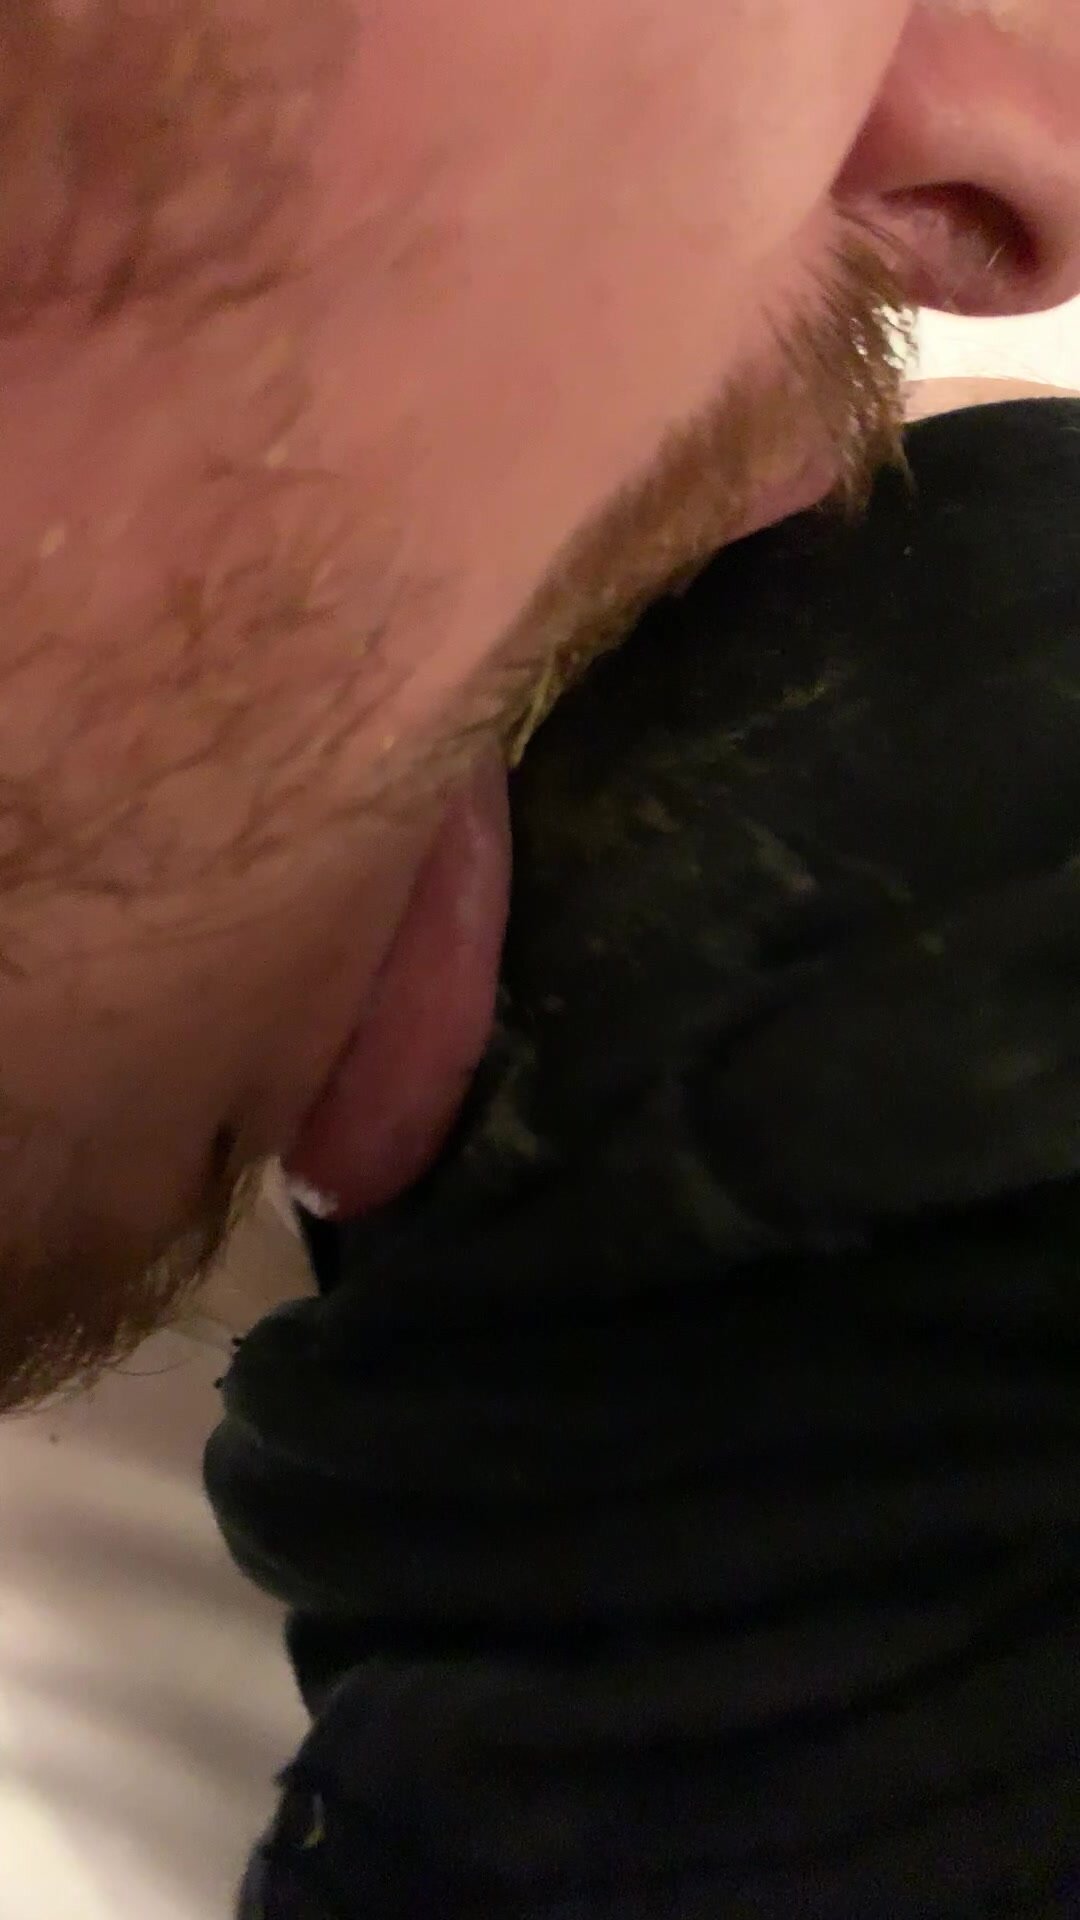 ▶︎ Faggot sfRedPig licks an infected wound